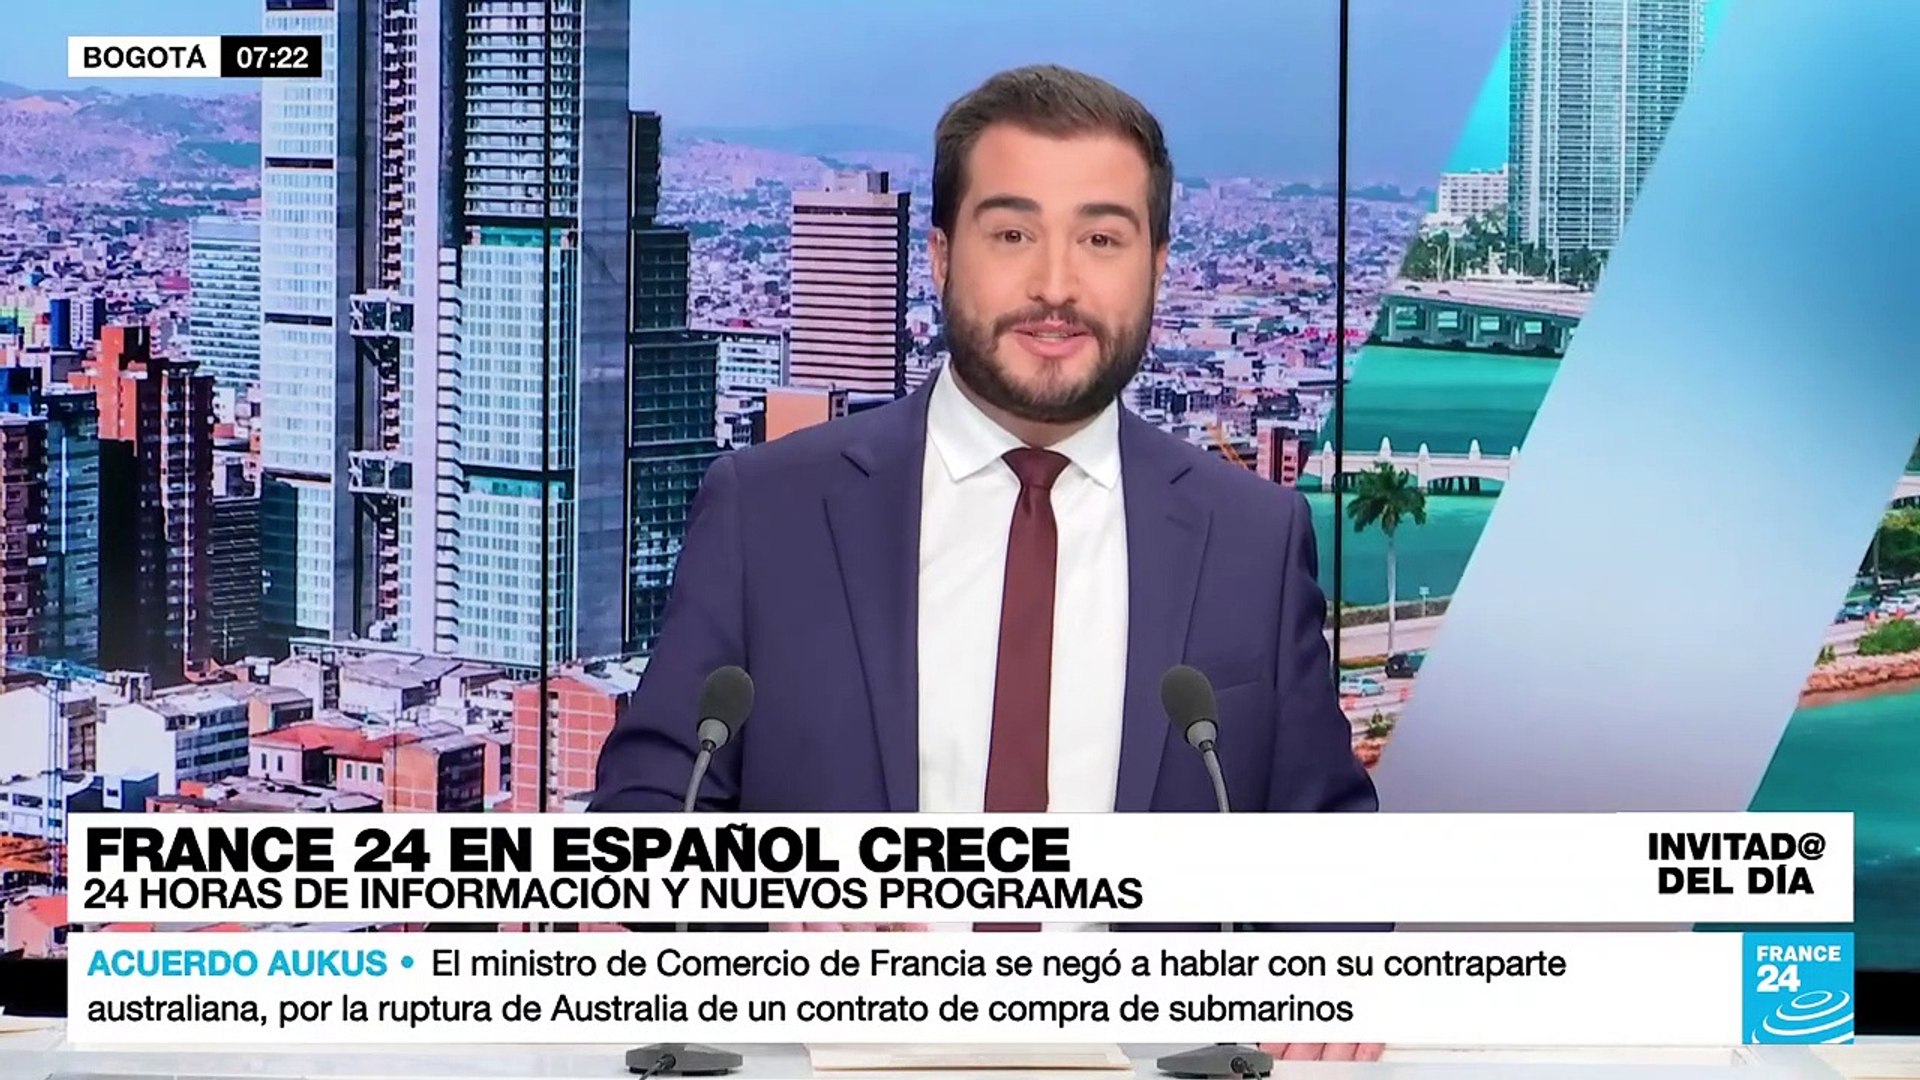 Álvaro Sierra: "Hemos llegado a la altura de crucero de un canal  internacional con 24 horas al aire" - Vídeo Dailymotion